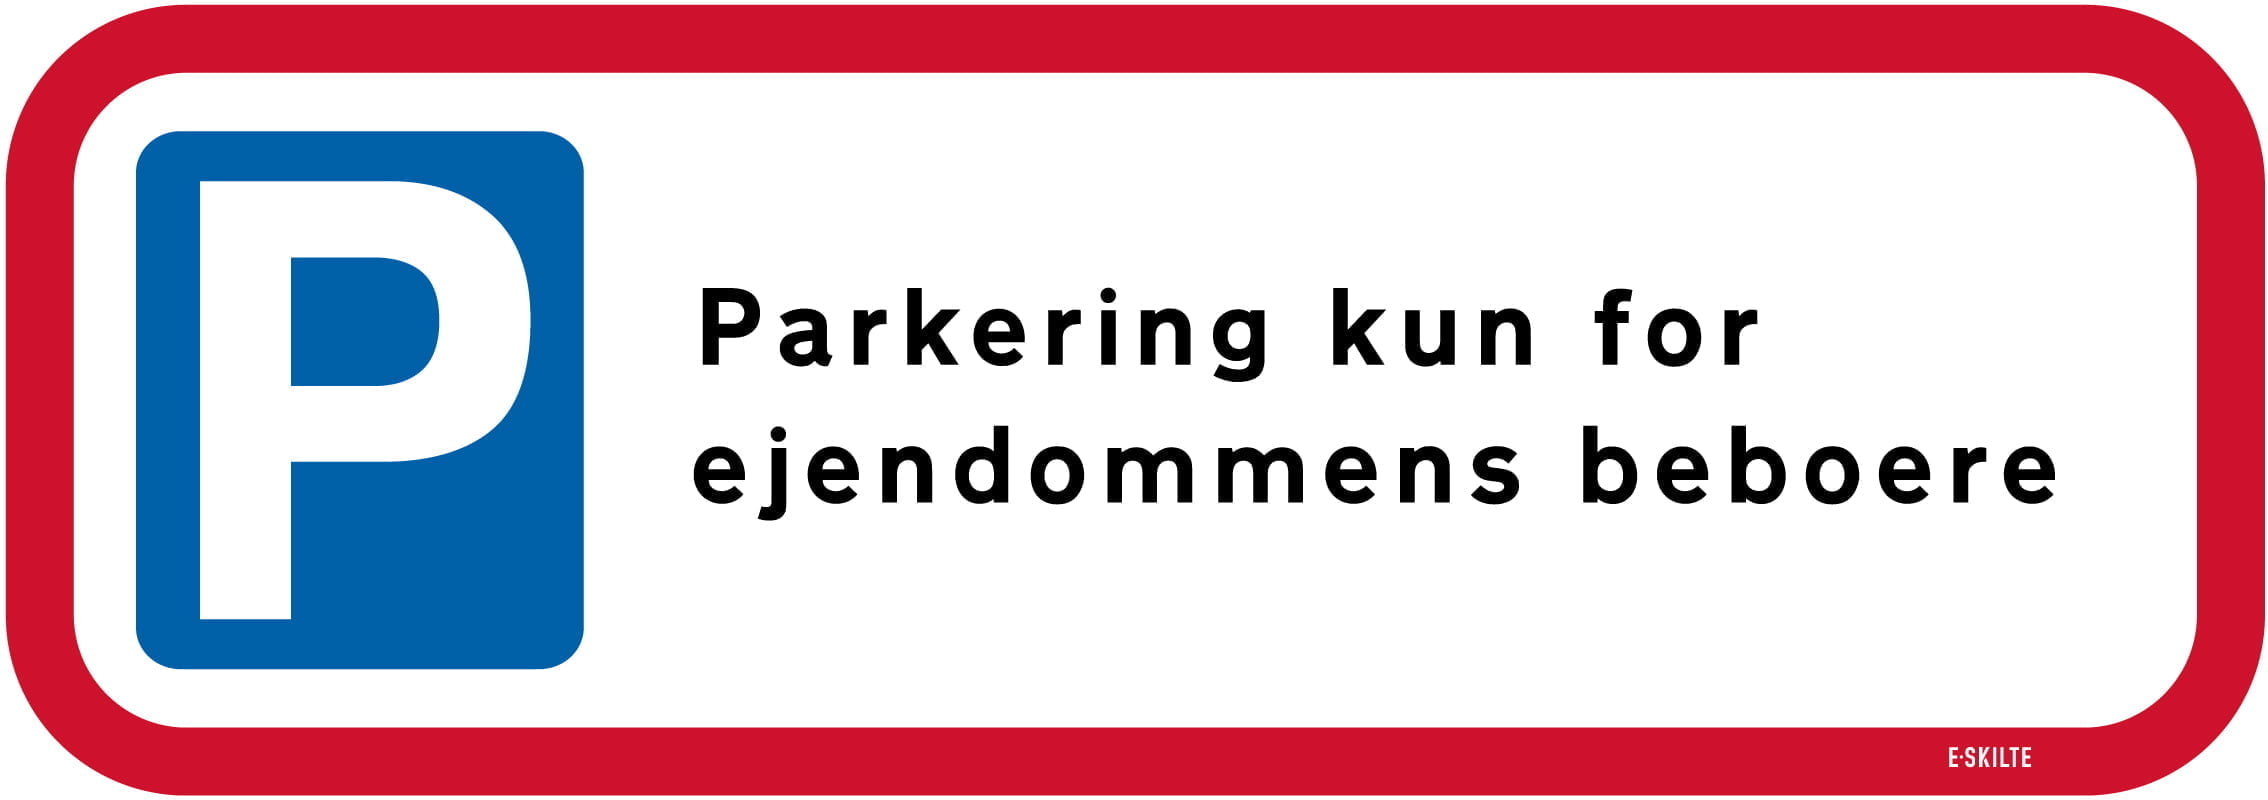 Parkering kun for ejendommens beboere